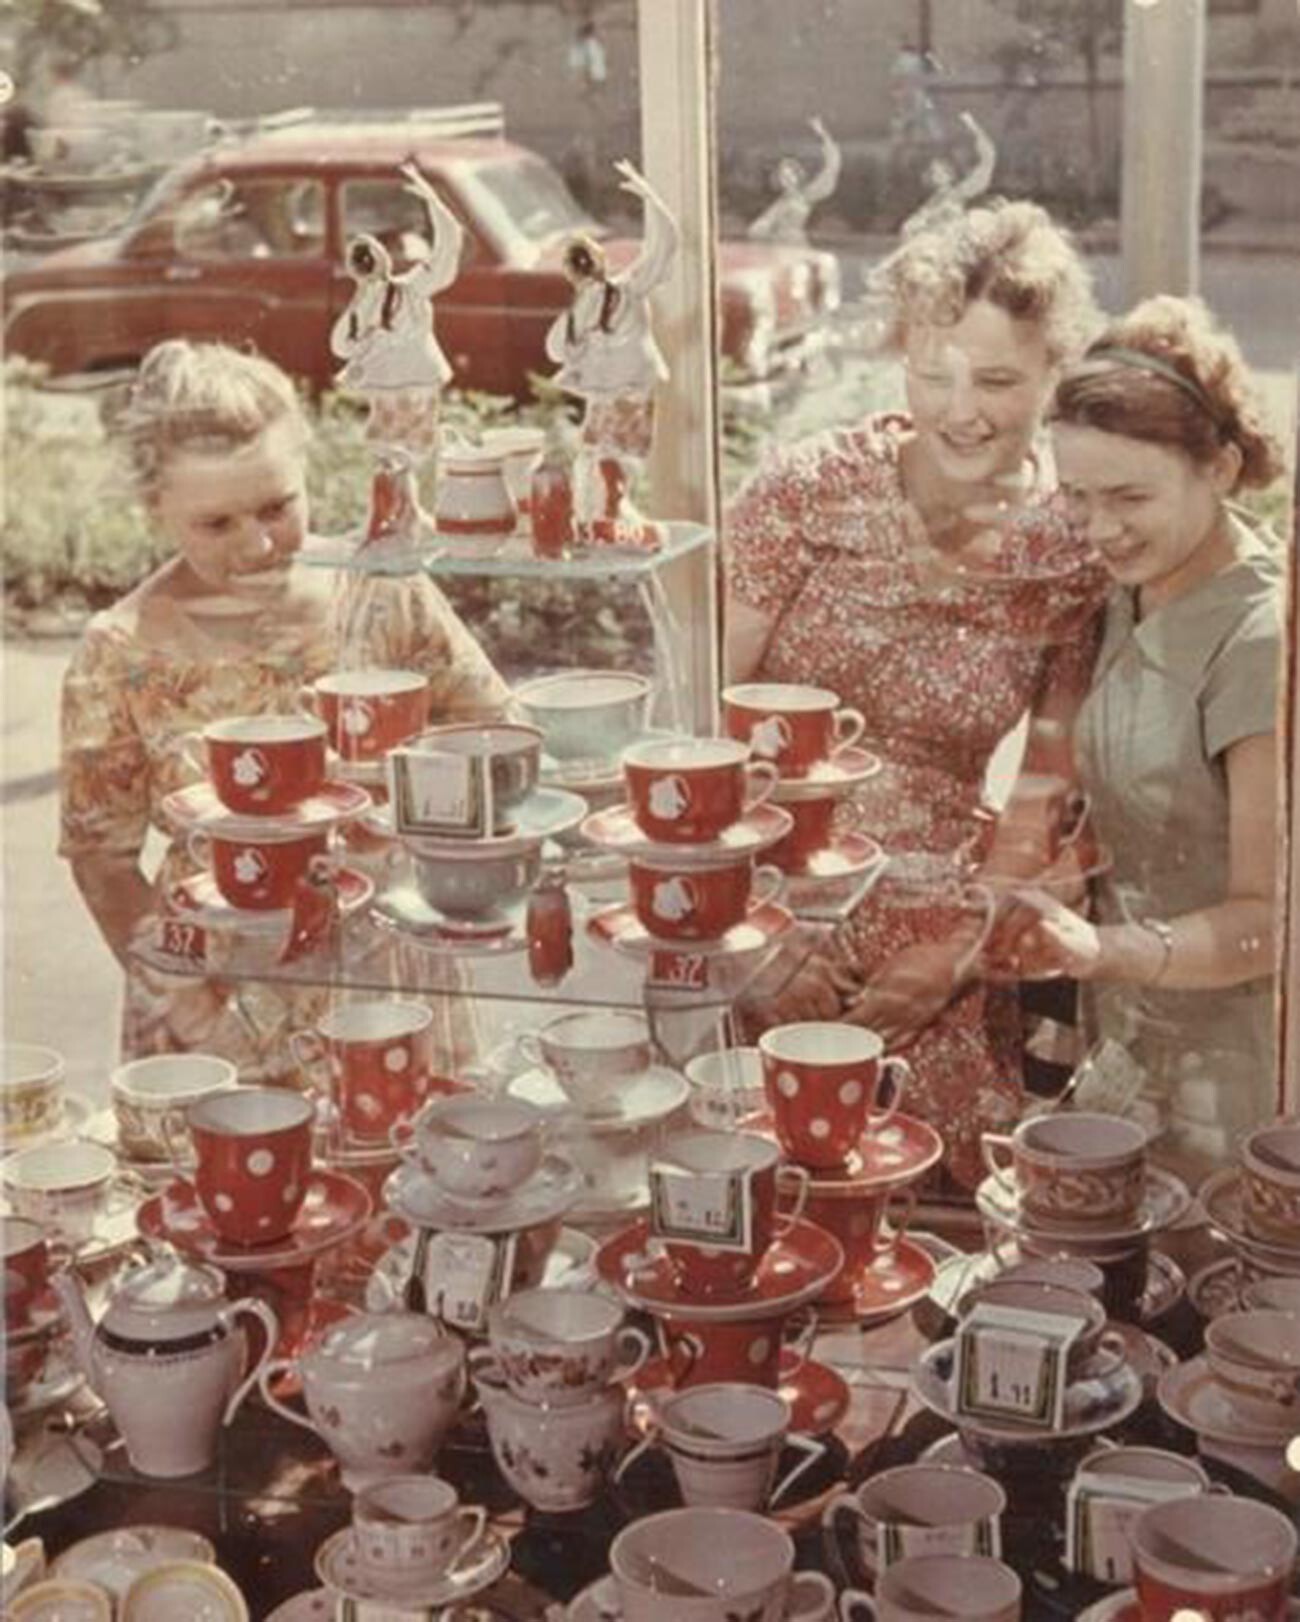 Jendela toko dengan aneka piring dan barang pecah belah lainnya, 1960-an.